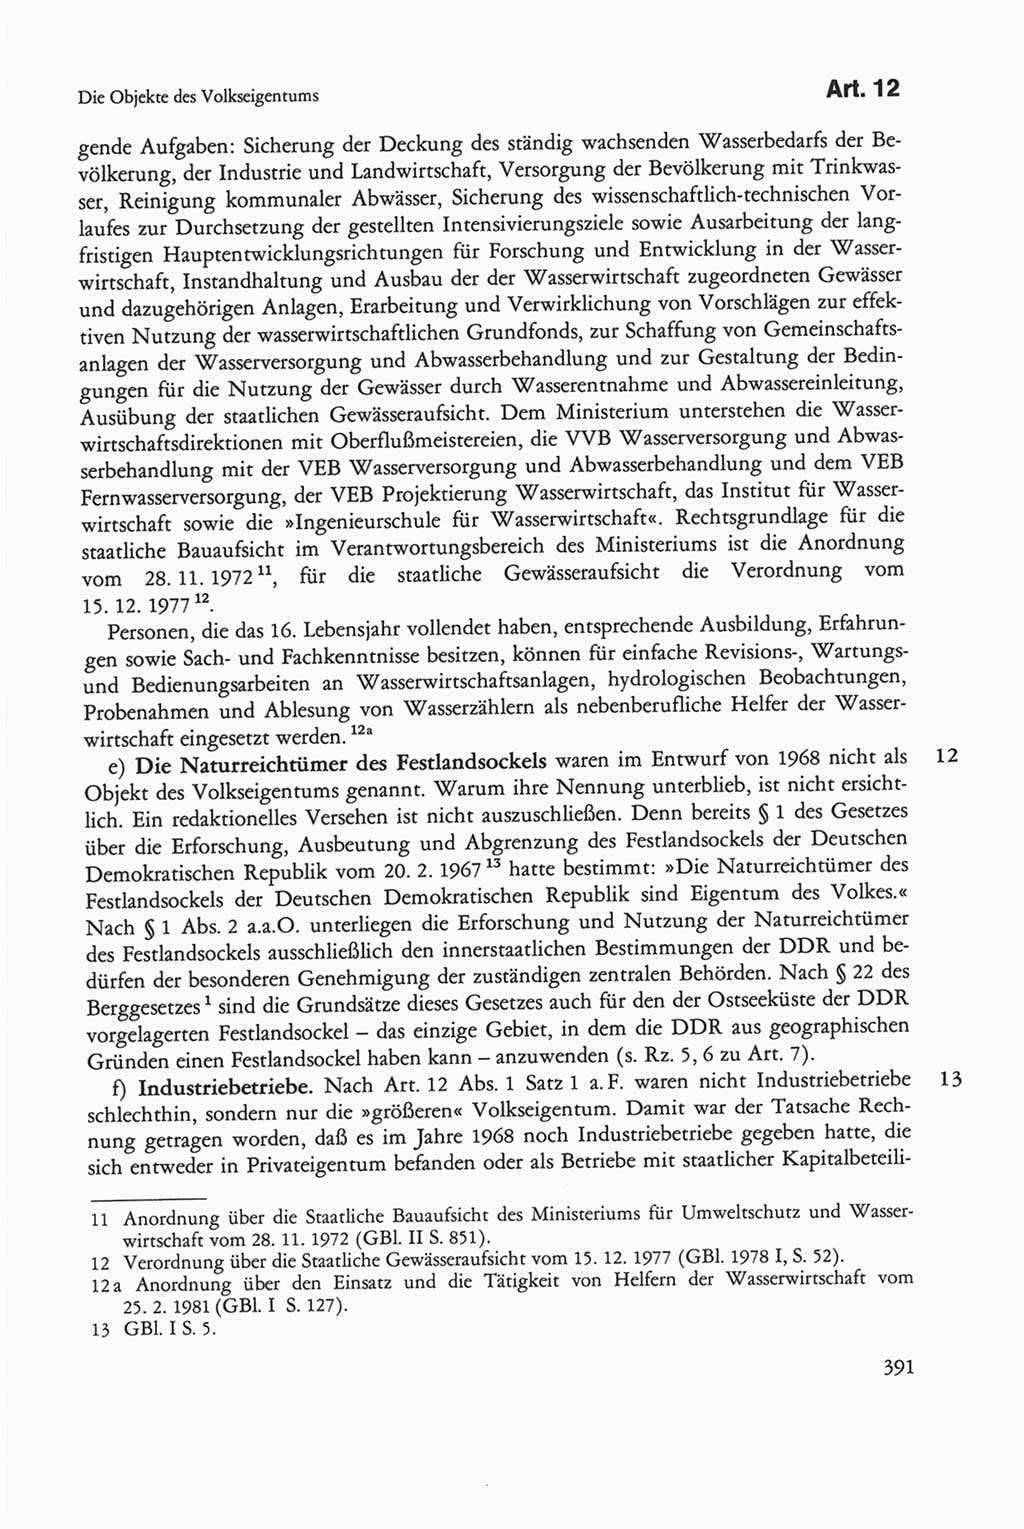 Die sozialistische Verfassung der Deutschen Demokratischen Republik (DDR), Kommentar 1982, Seite 391 (Soz. Verf. DDR Komm. 1982, S. 391)